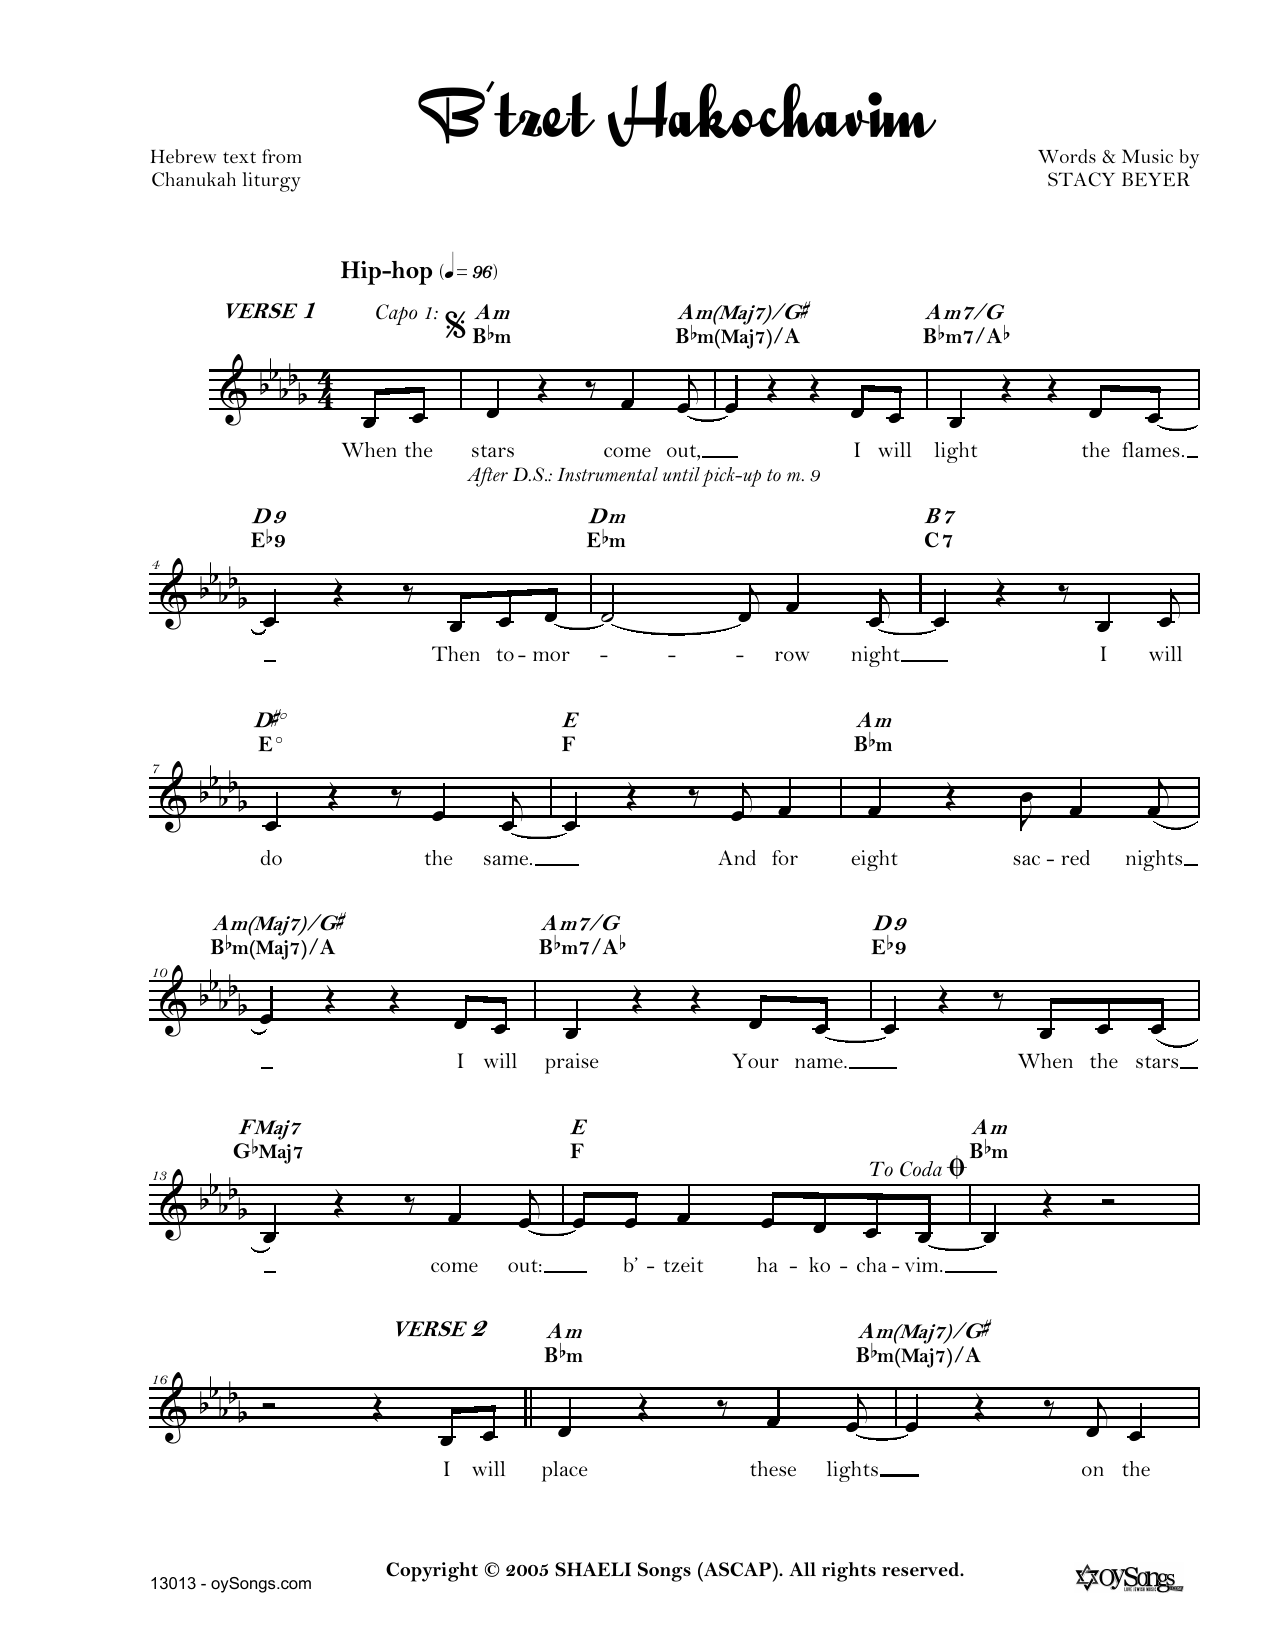 Stacy Beyer B'tzet Hakochavim sheet music notes and chords arranged for Lead Sheet / Fake Book